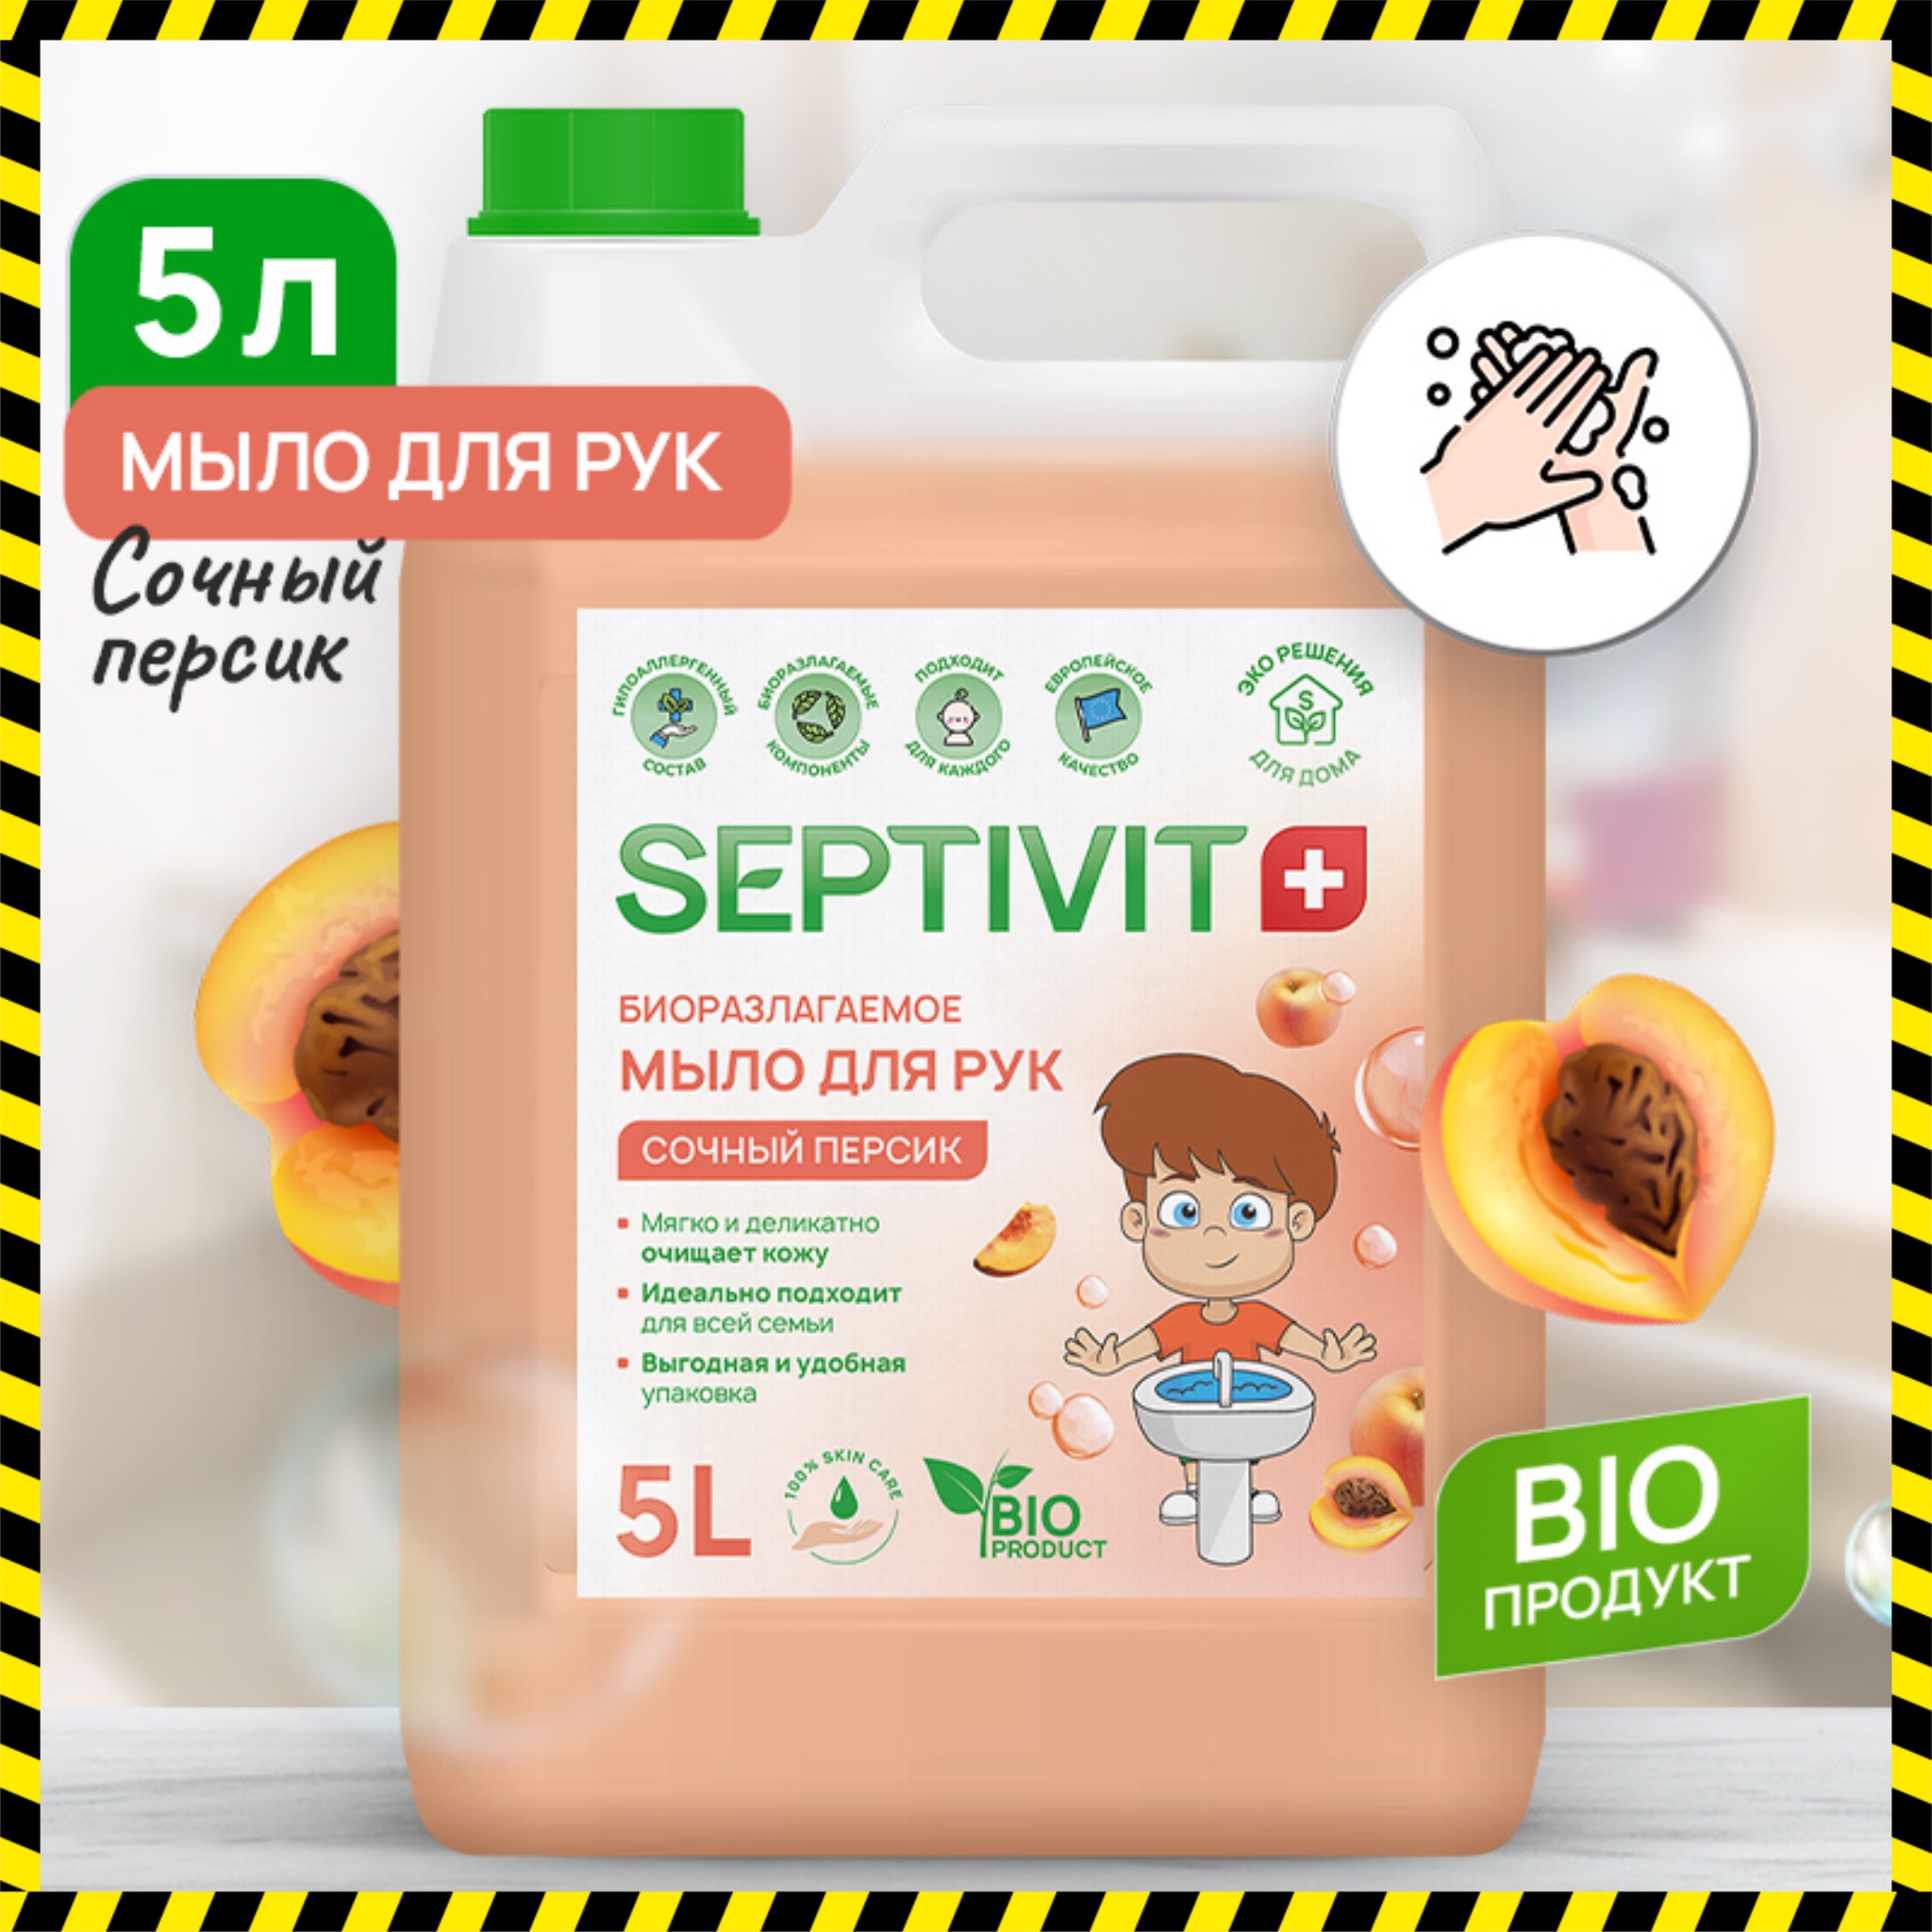 Жидкое мыло для рук Сочный персик Septivit Premium 5л мыло жидкое диспенсерное персик пэт 5 л